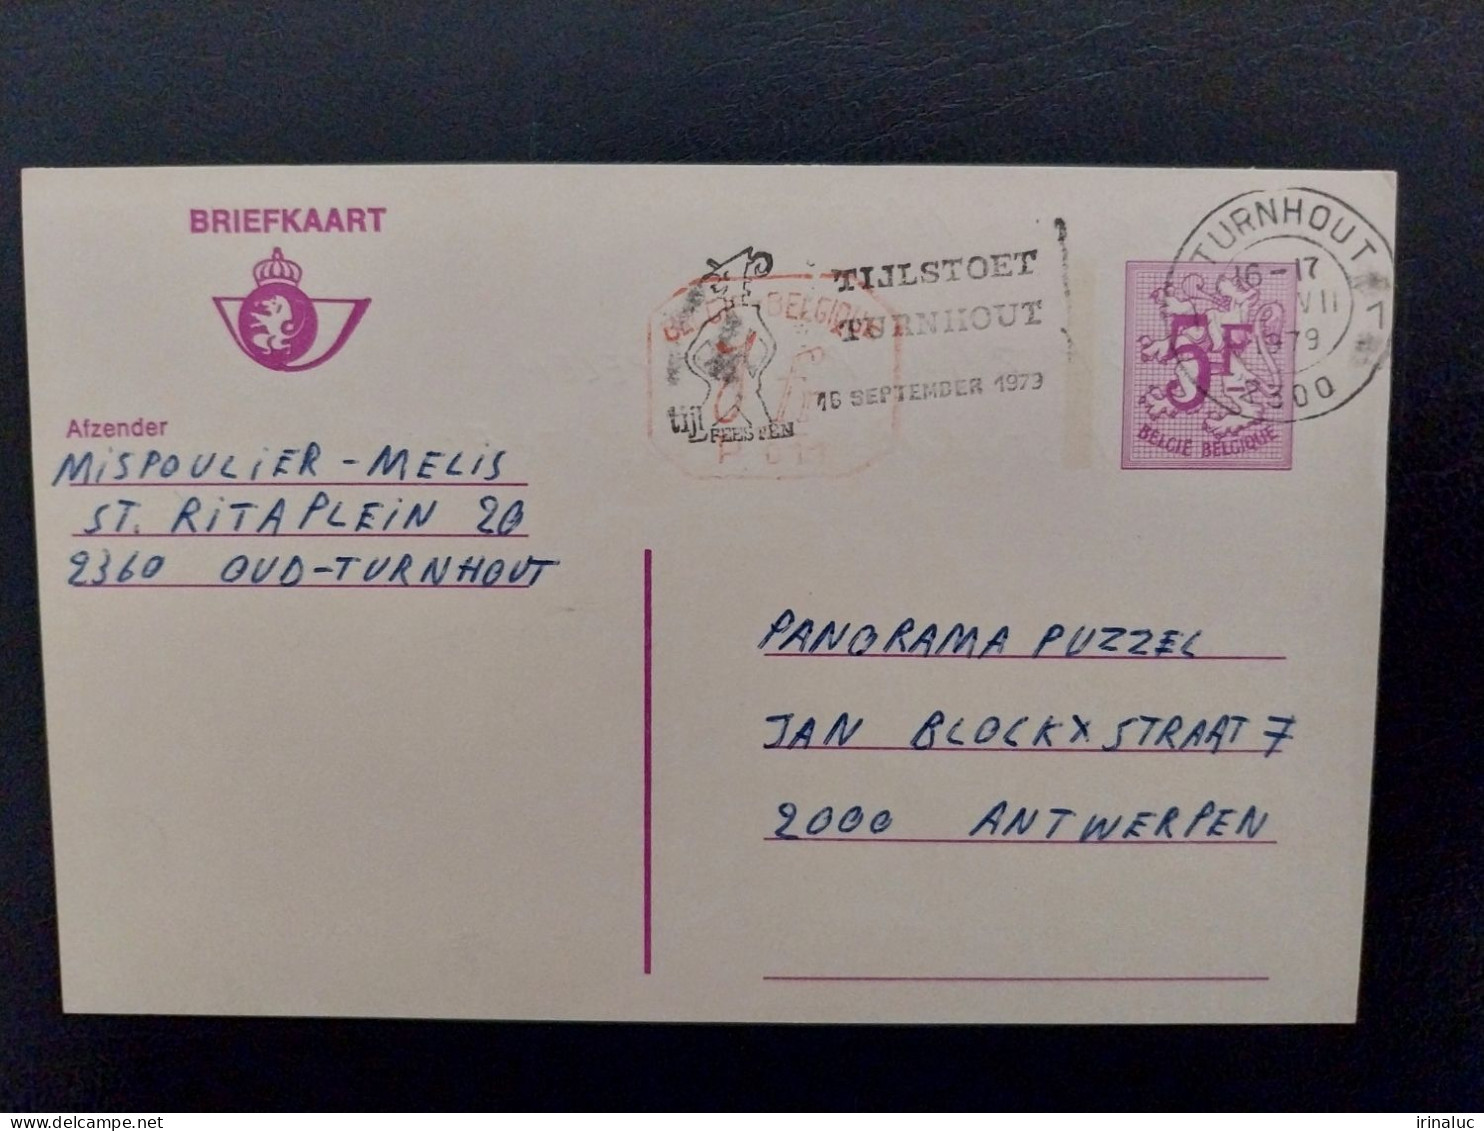 Briefkaart 185-IV M1 P011 - Briefkaarten 1951-..